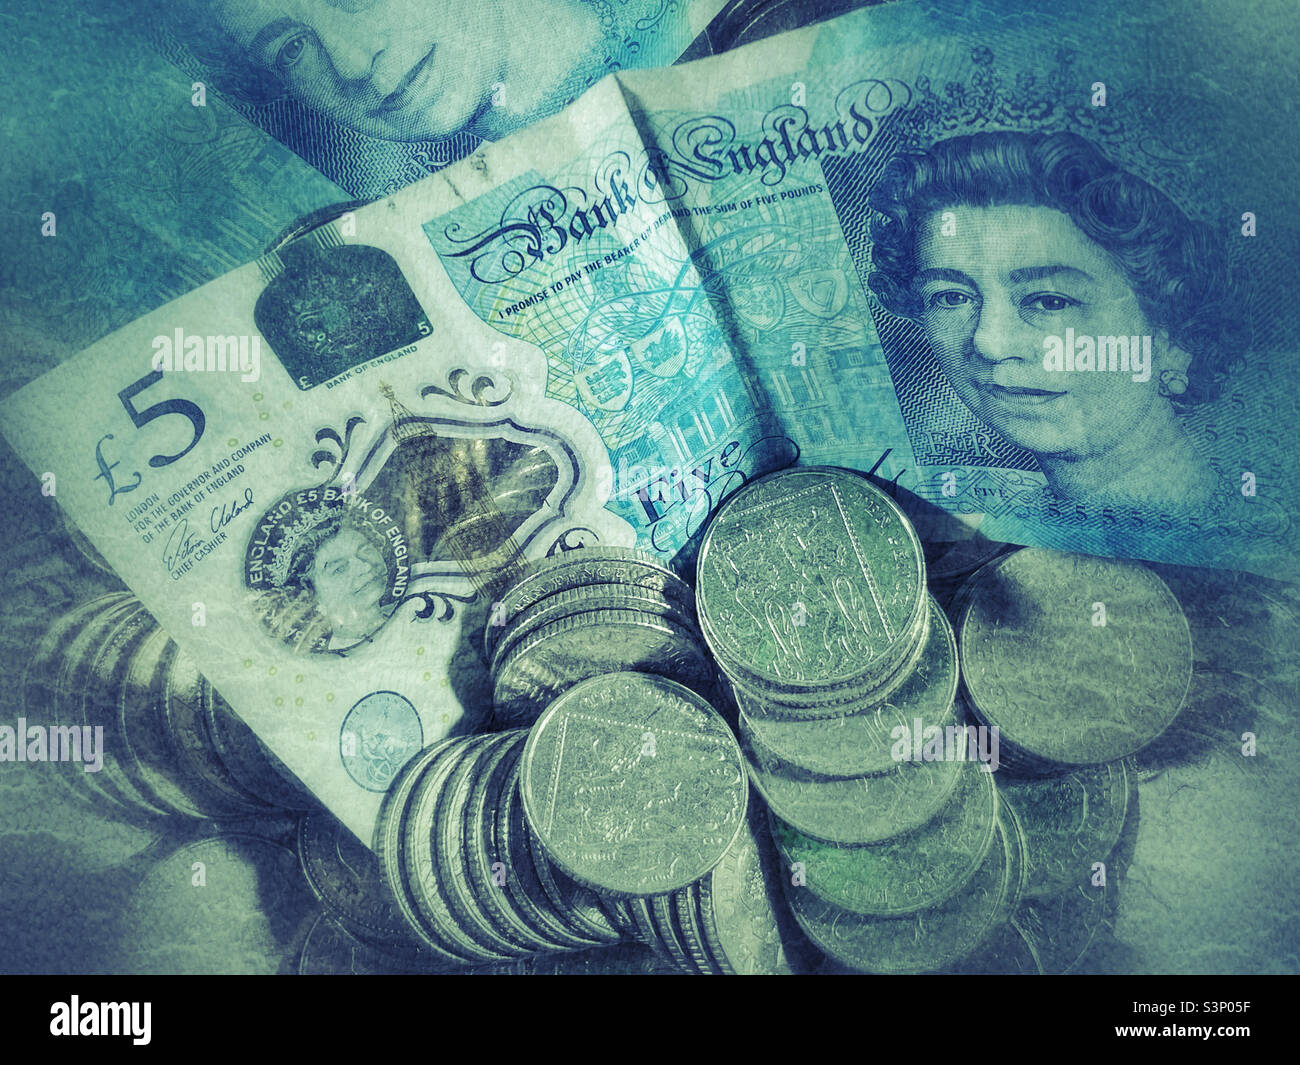 Eine kreative Interpretation eines Standbilds über dem Kopf von einer britischen Währung - zwei £5 Banknoten und Stapel von 10 Pence-Münzen. Foto ©️ COLIN HOSKINS. Stockfoto